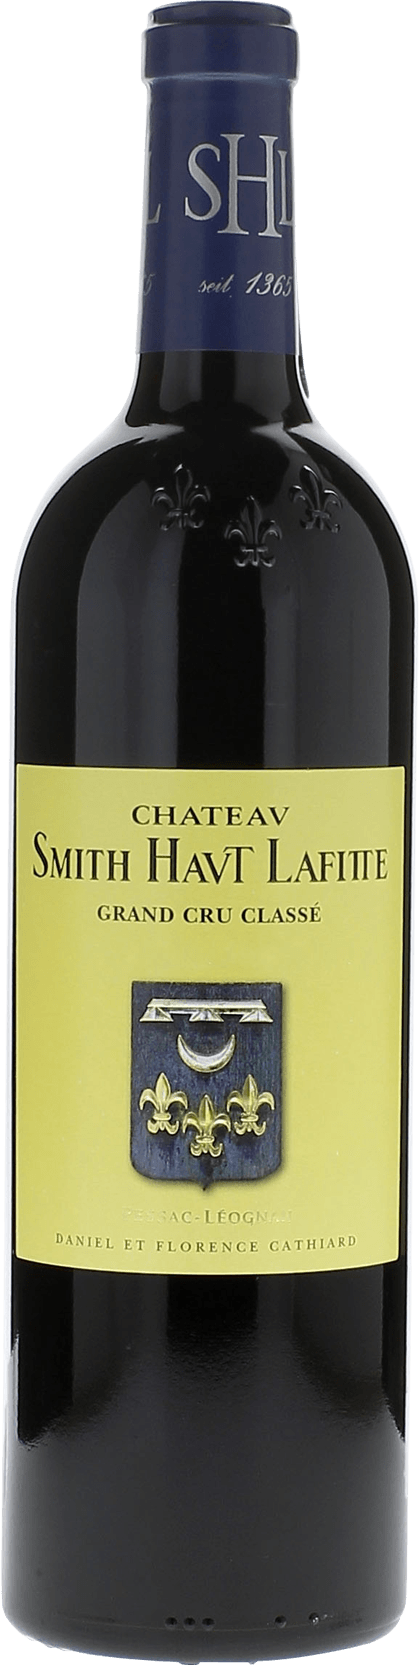 Smith haut lafitte 2012 Grand Cru Class Graves, Bordeaux rouge